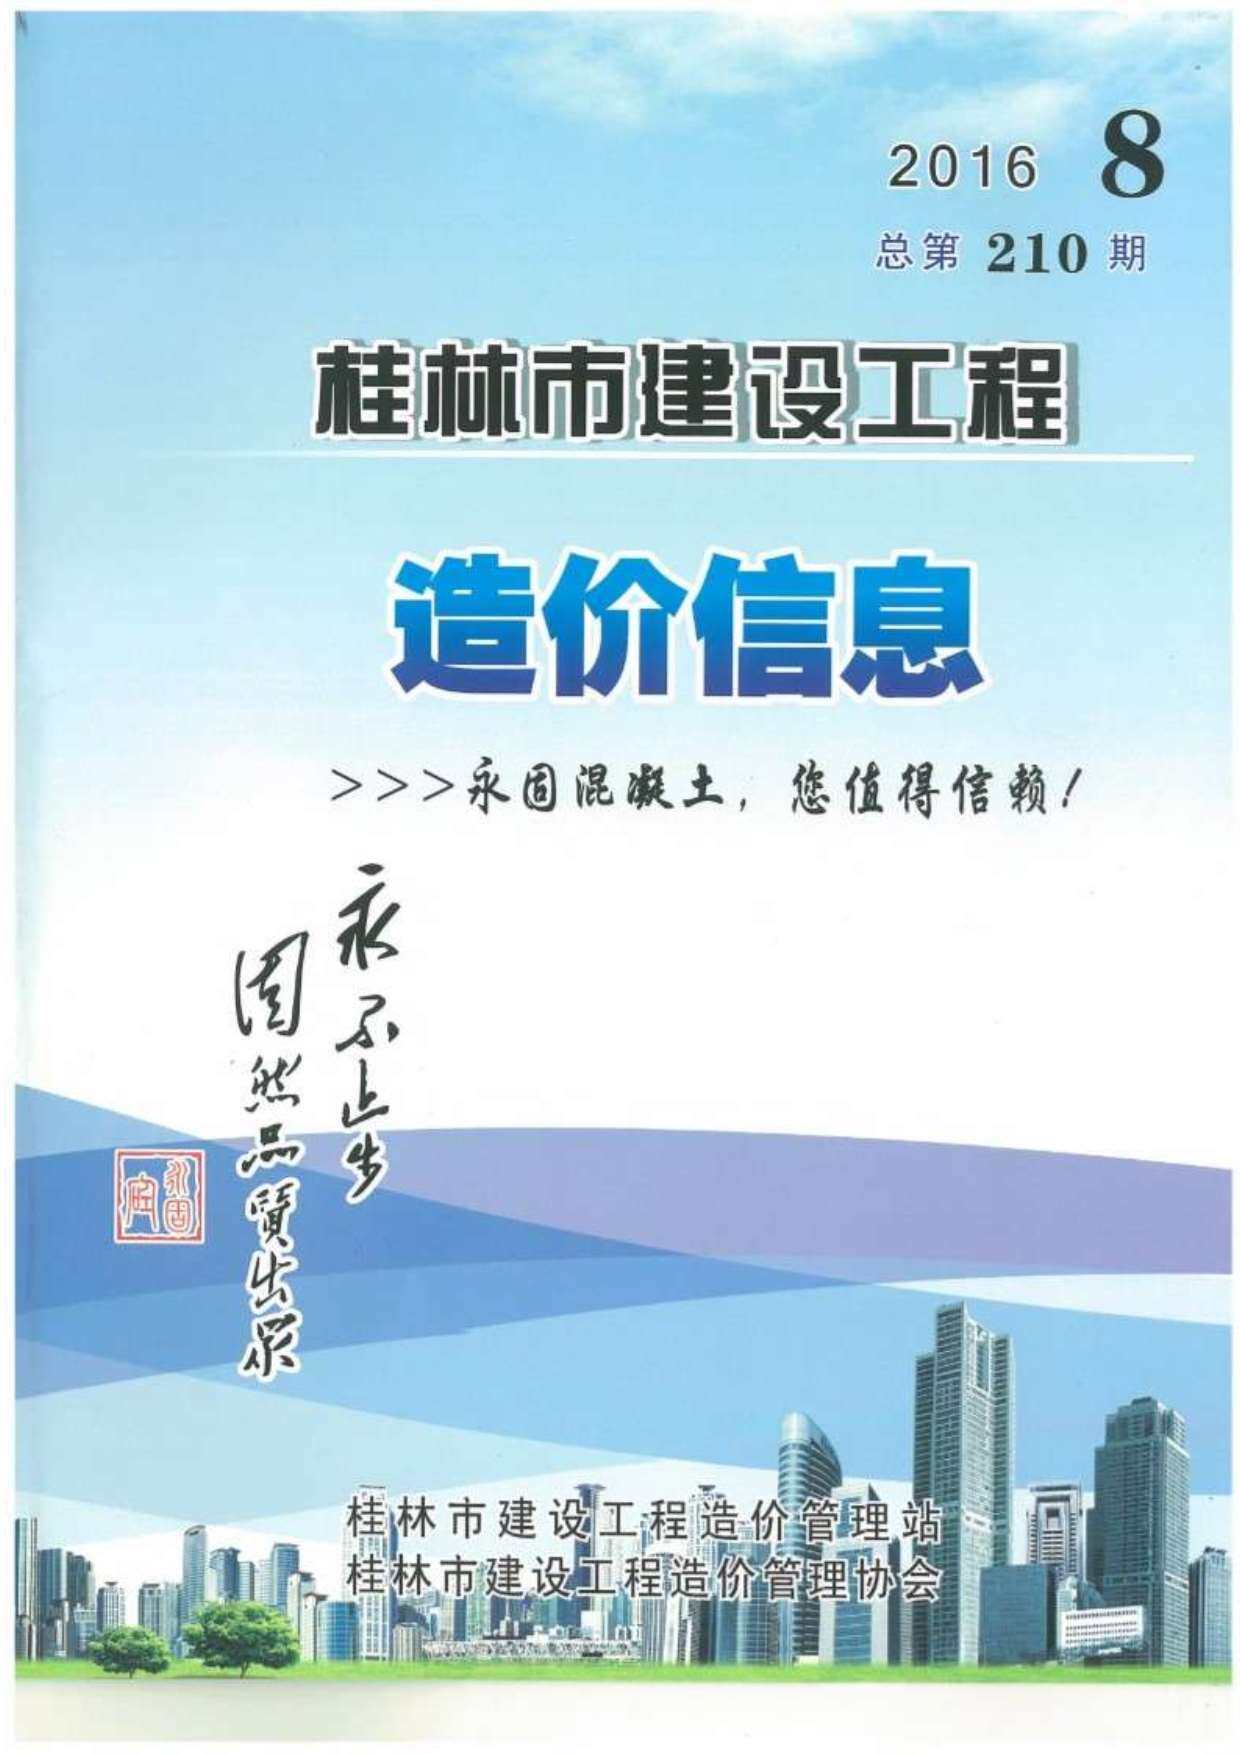 桂林市2016年8月工程造价信息期刊